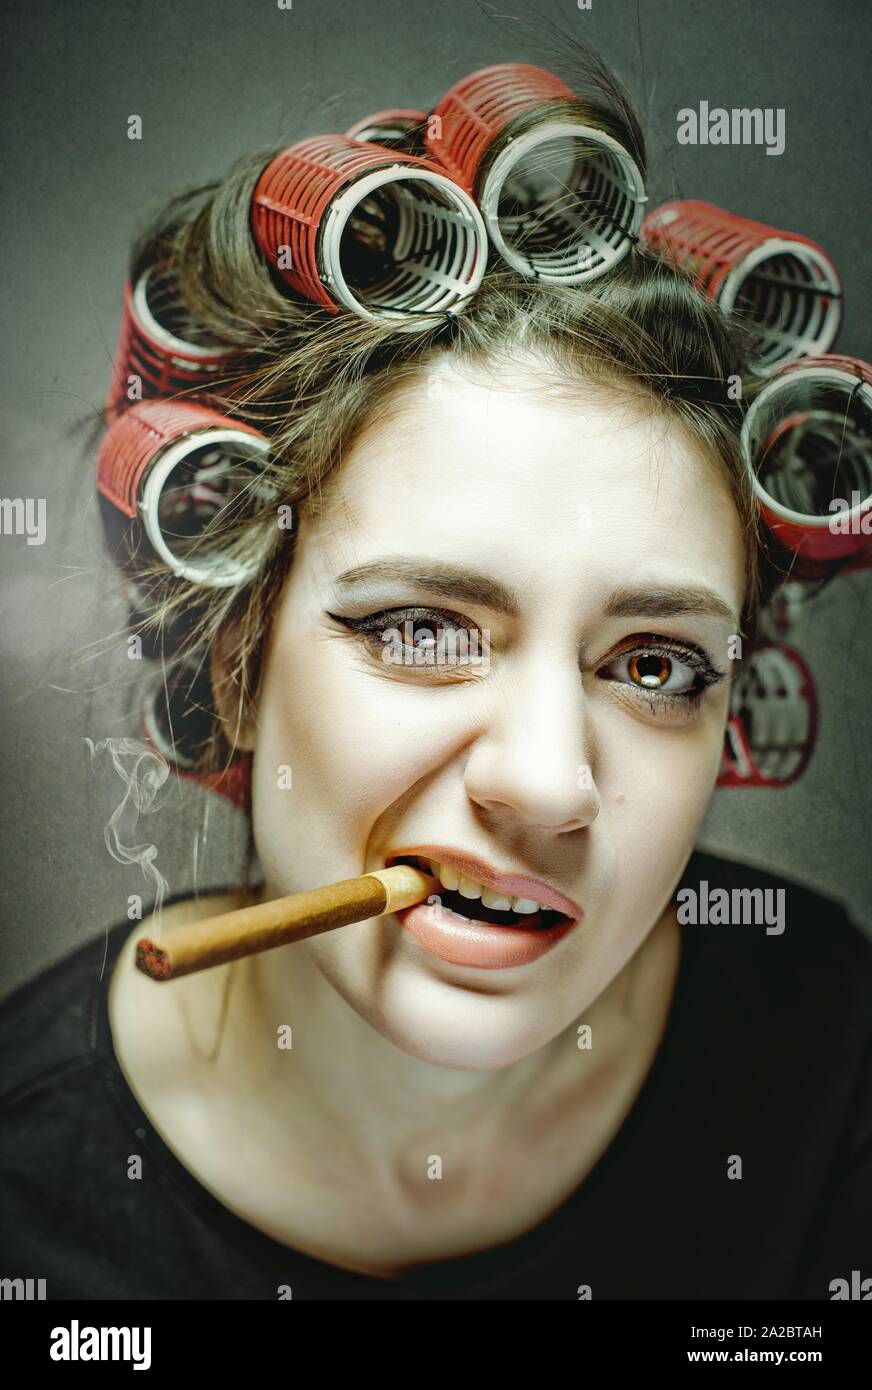 Gefährliche Sachen. Lustige Frau Porträt mit grossen Zigarre und große  Lockenwickler Stockfotografie - Alamy